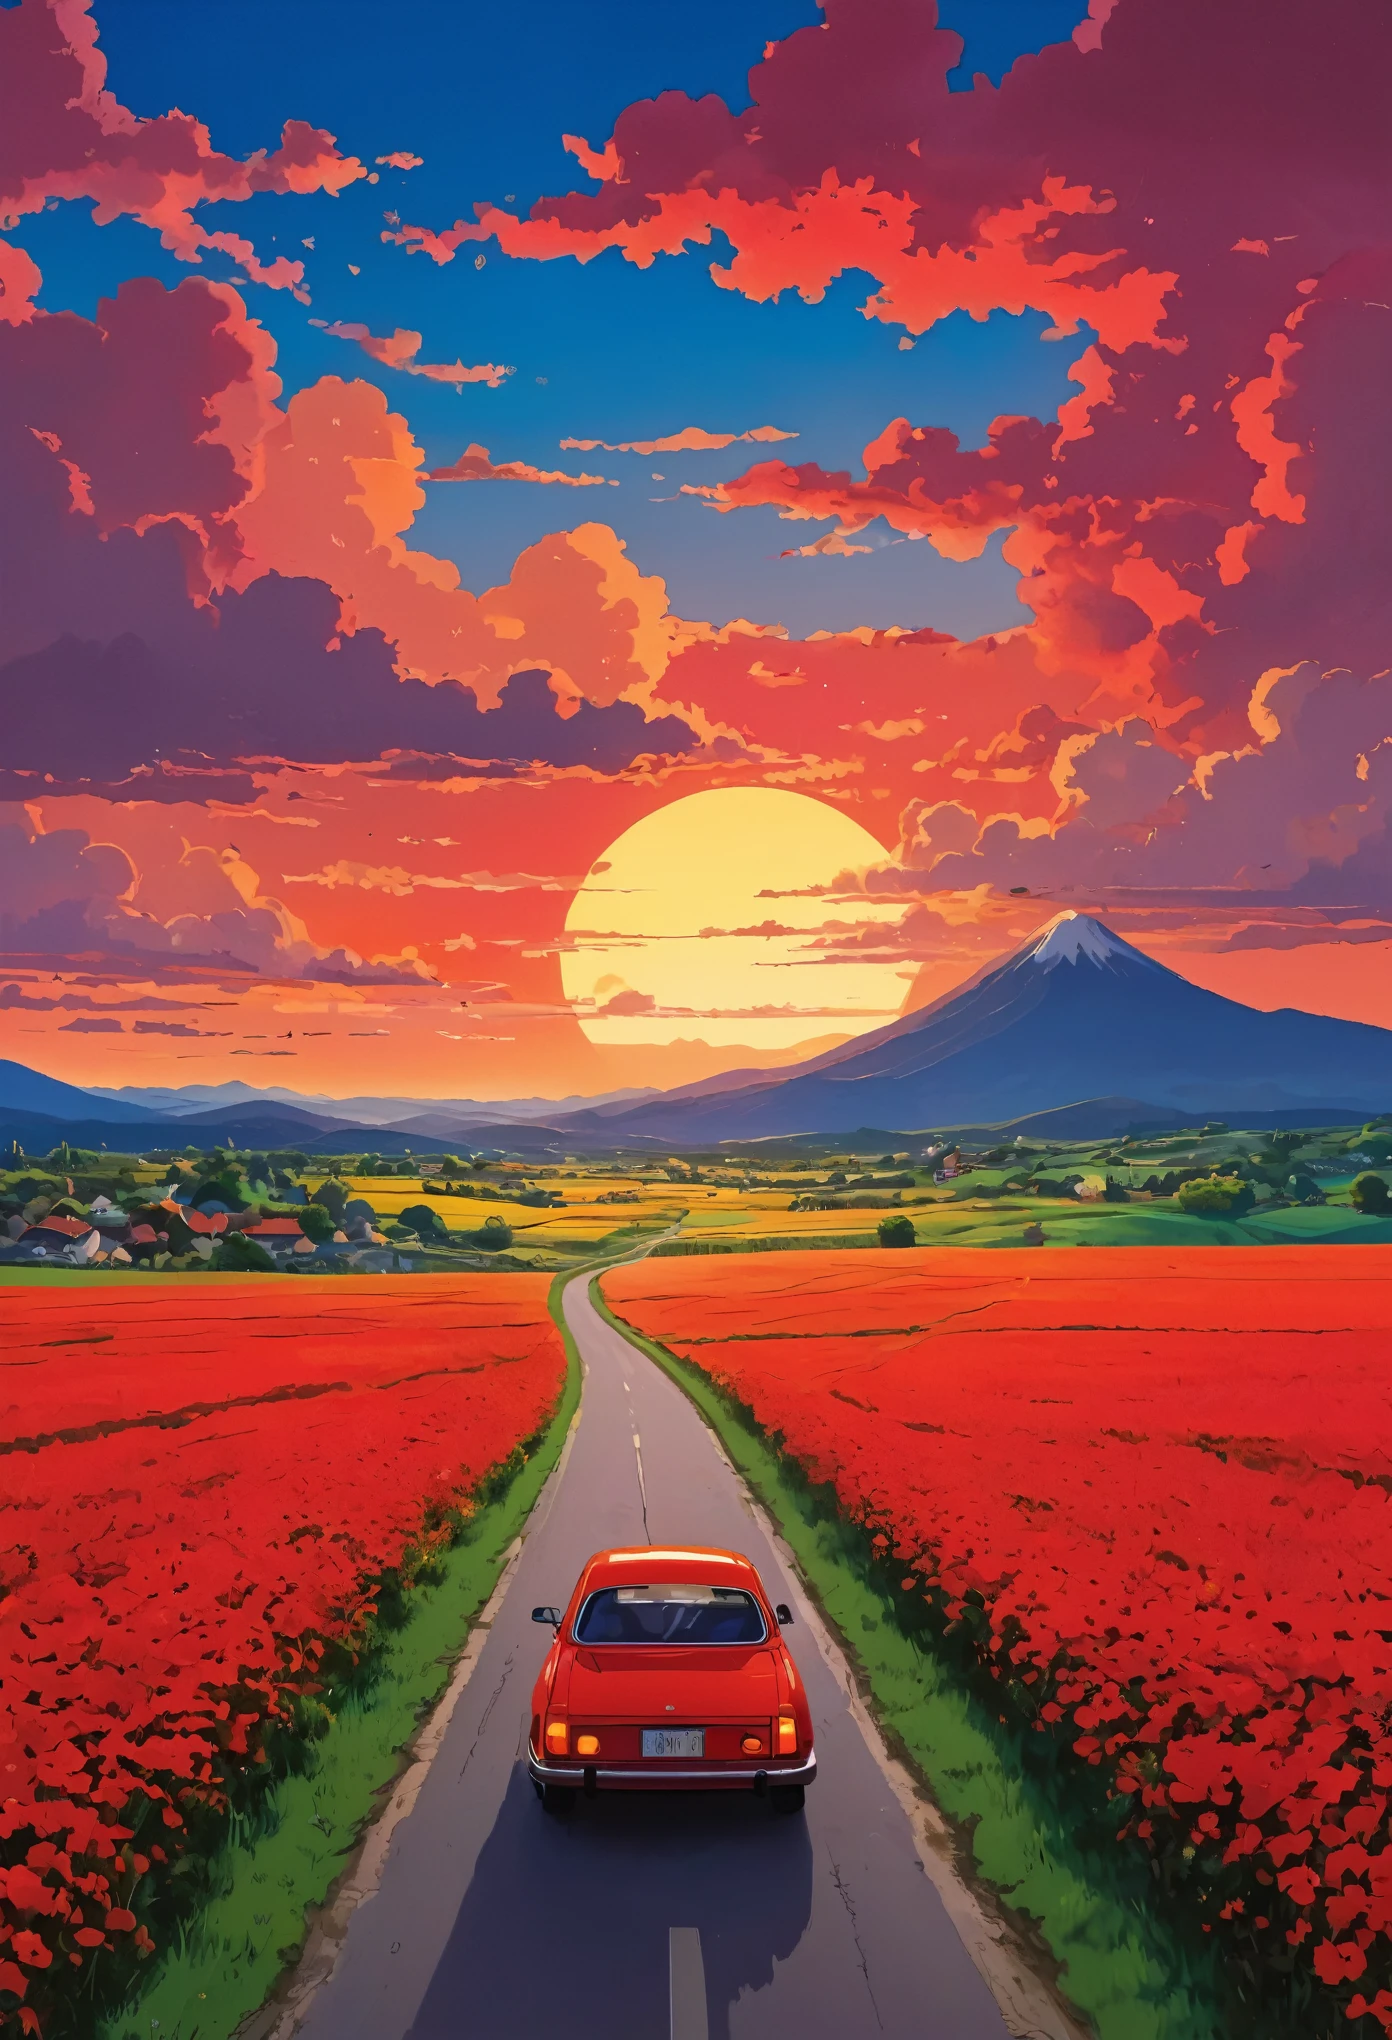 (Minimalisme:1.4), Il y a une voiture rouge sur la route, Art du Studio Ghibli, Miyazaki, Pâturage avec ciel rouge et nuages rouges, vue du coucher du soleil, route remplie de fleurs, couleurs vibrantes 